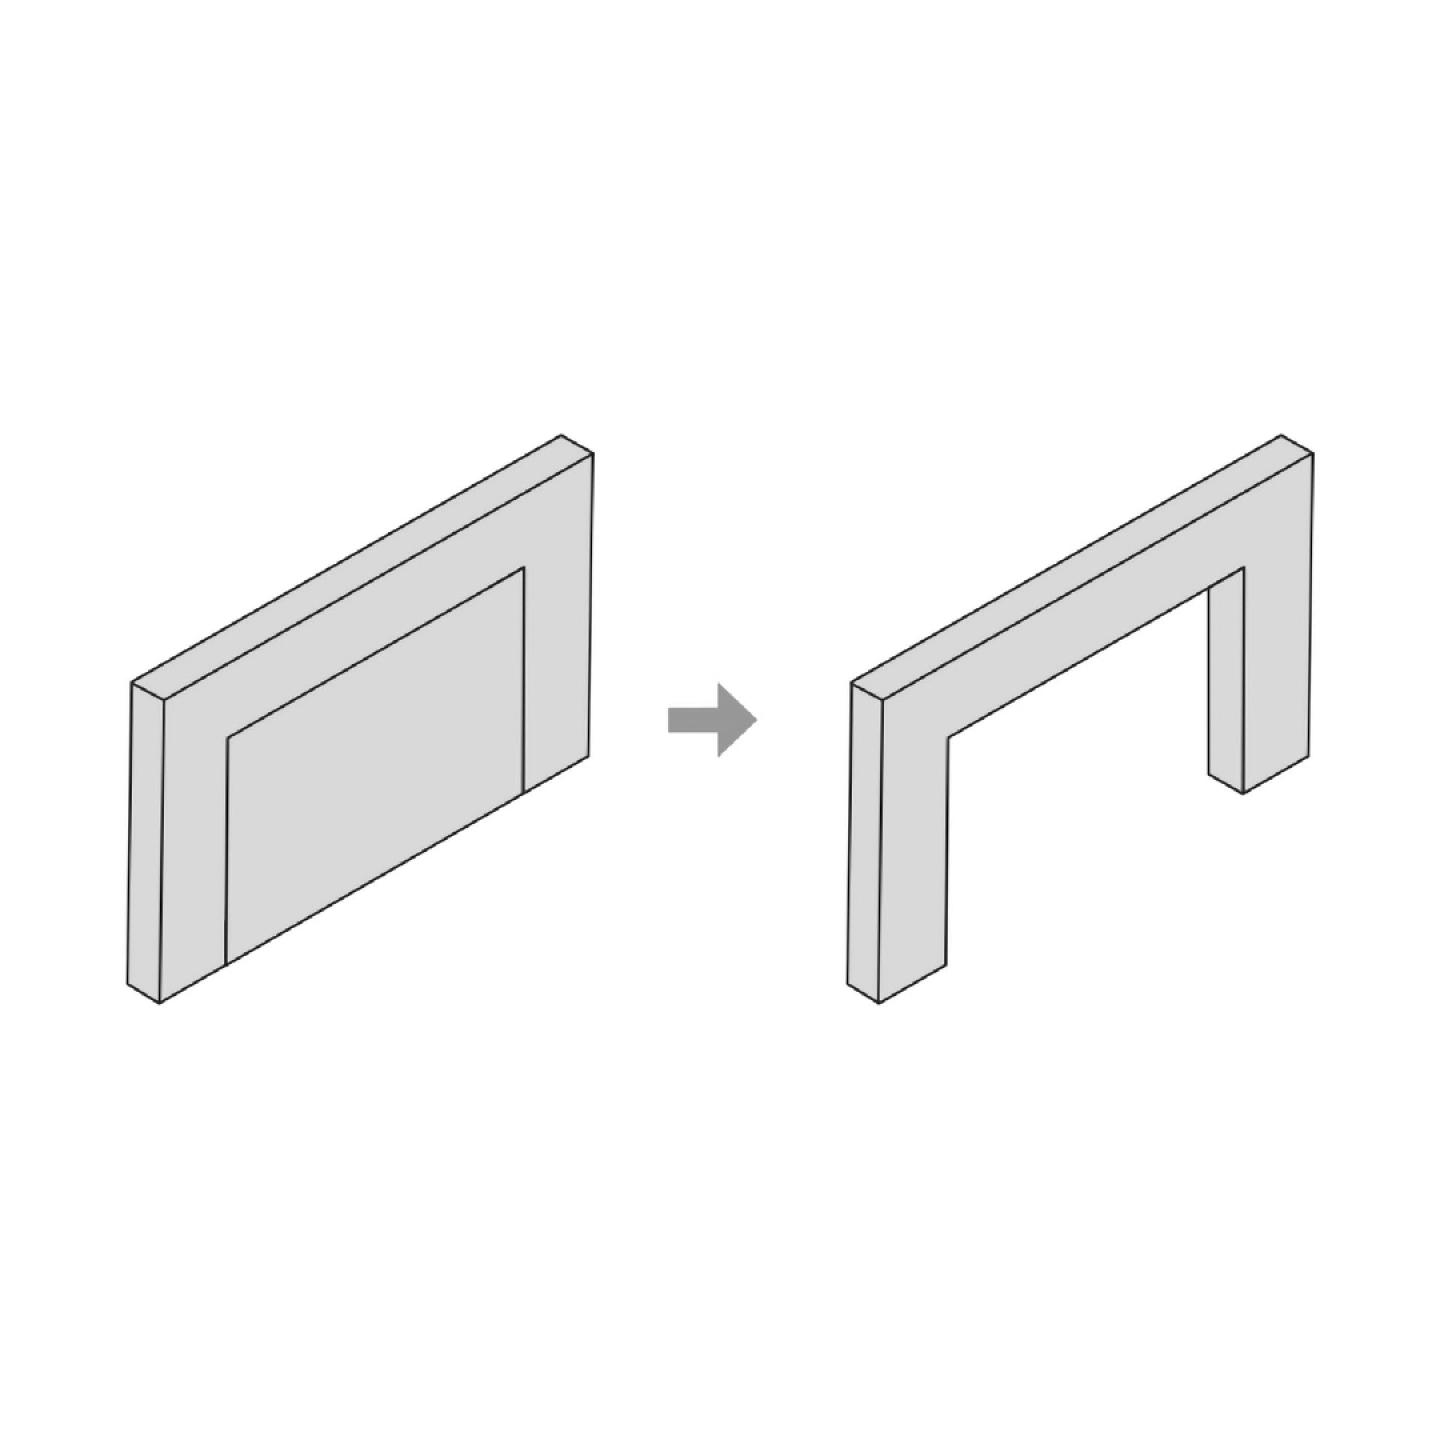 Med betonelementer med en fleksibel midtersektion er det muligt at skære huller i en betonvæg i et byggeri uden at skulle lave hverken forstærkninger eller foretage nye beregninger for de statiske egenskaber. Rammen er nemlig dimensioneret til at kunne optage lasten efter, at midterzonen er fjernet. Illustration: DTU